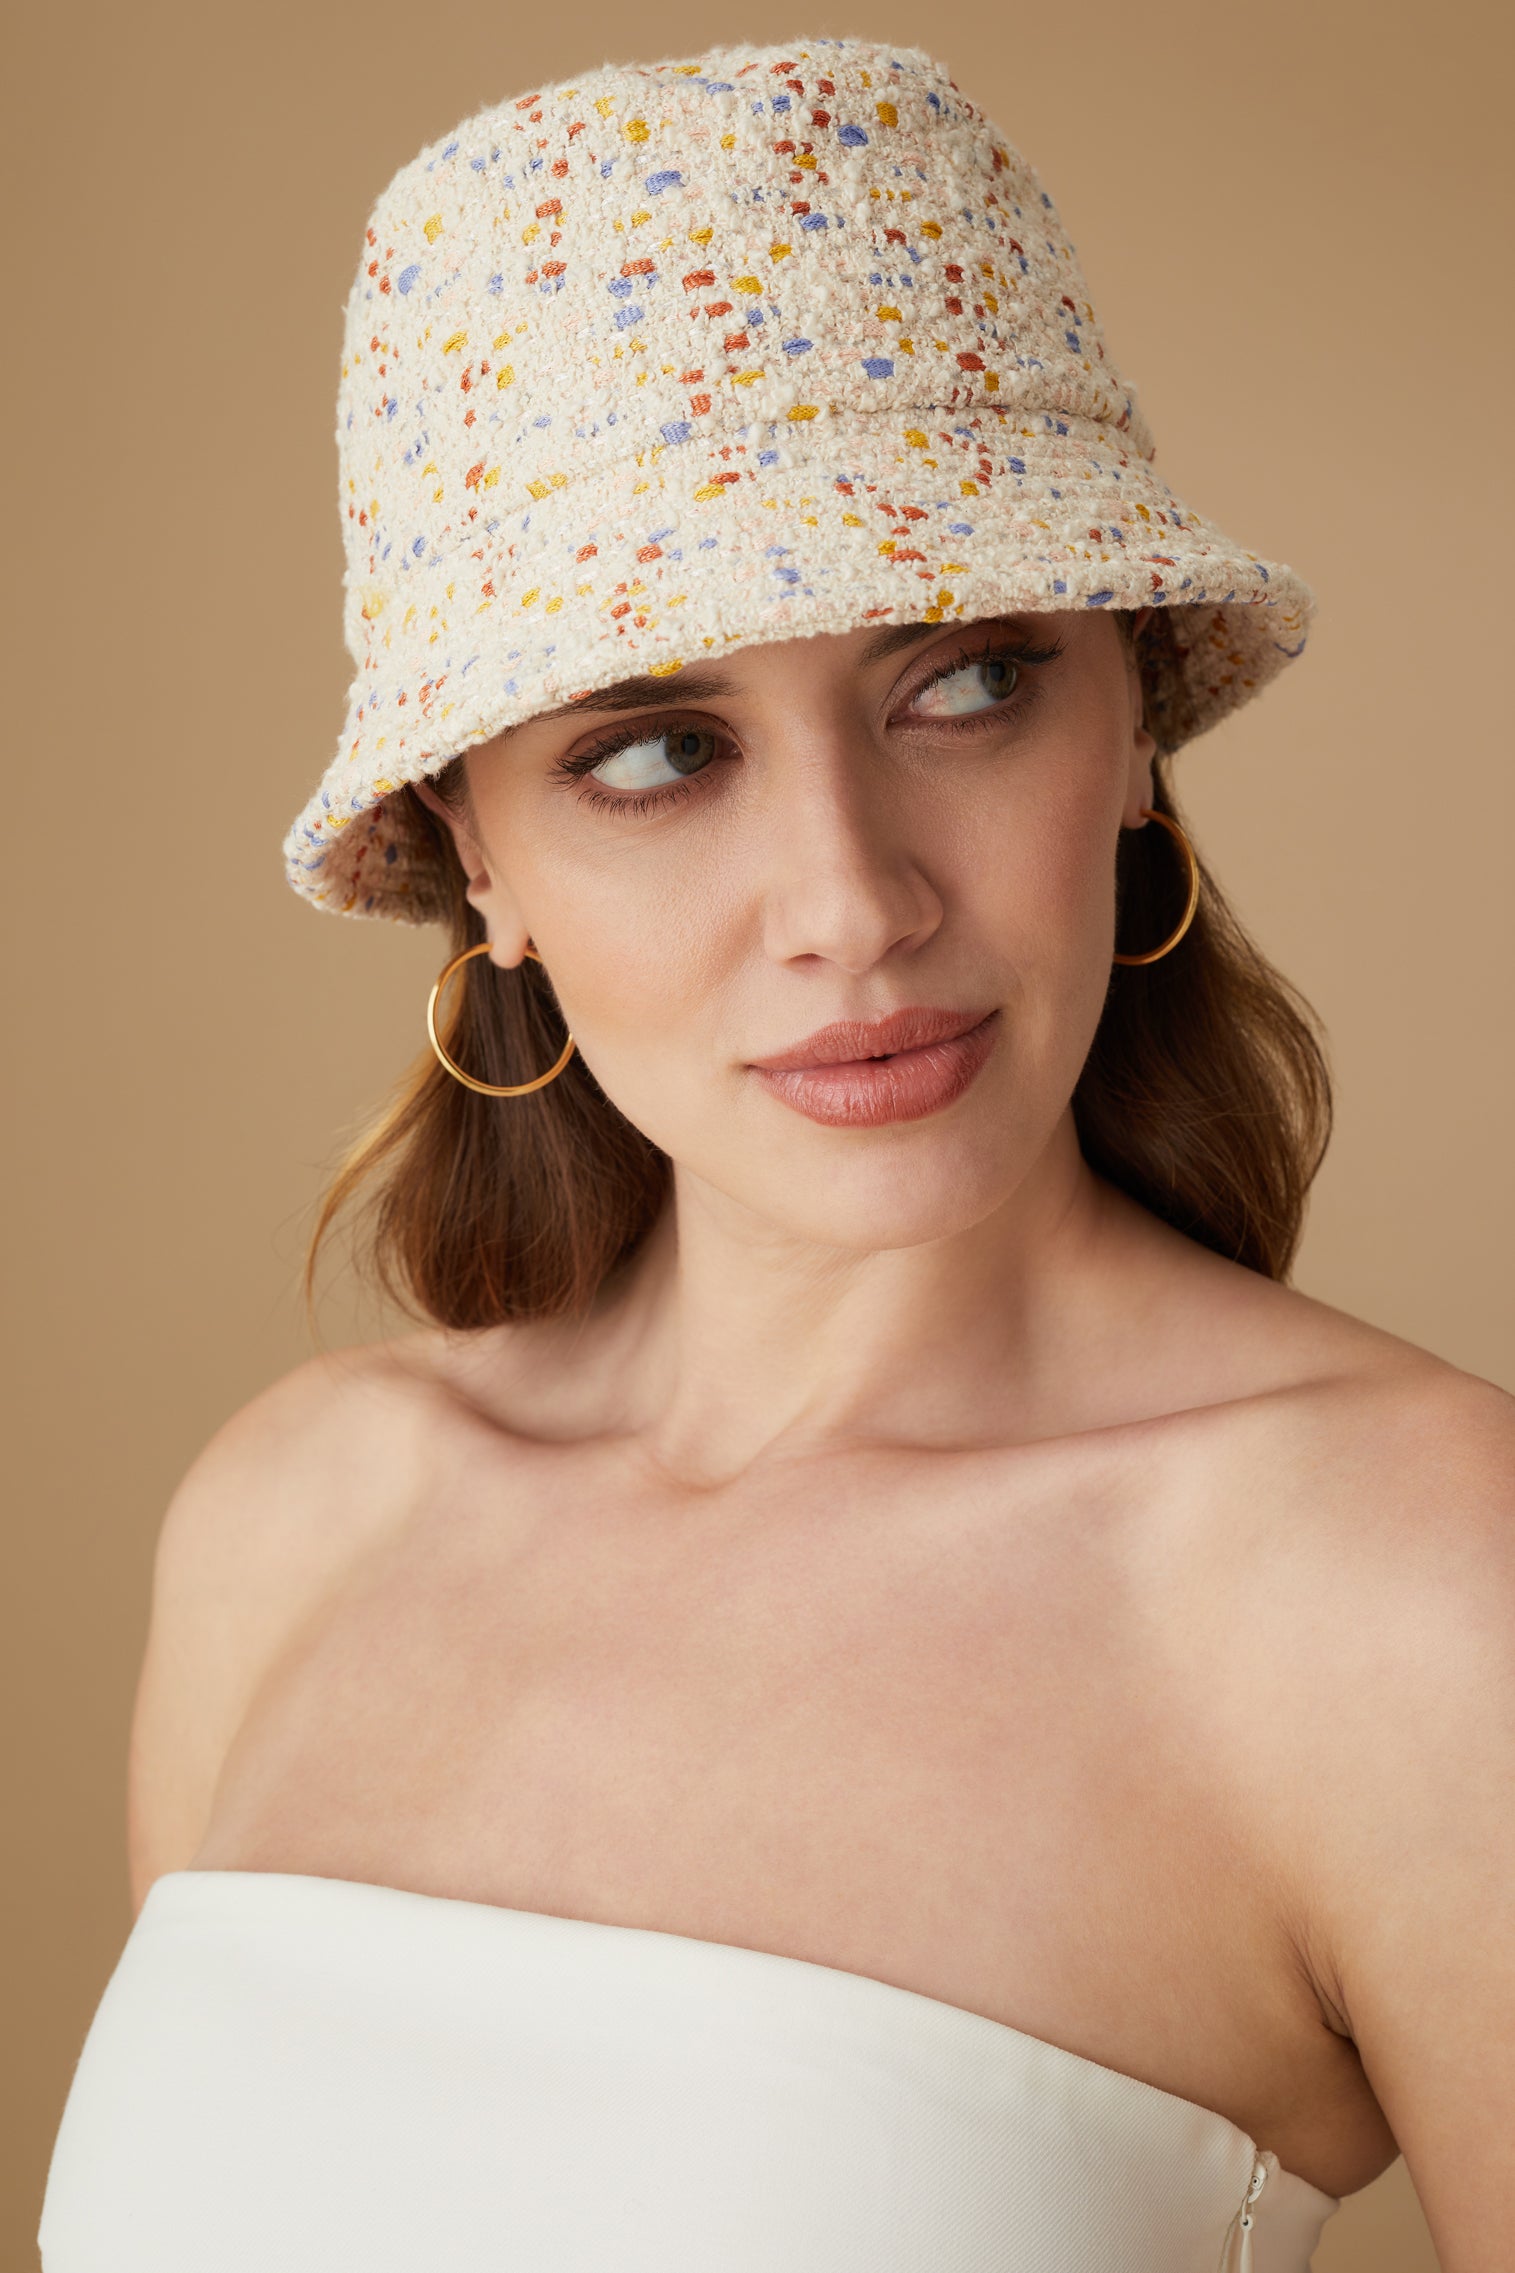 Rye Speckled Bucket Hat - Womens Featured - Lock & Co. Hatters London UK